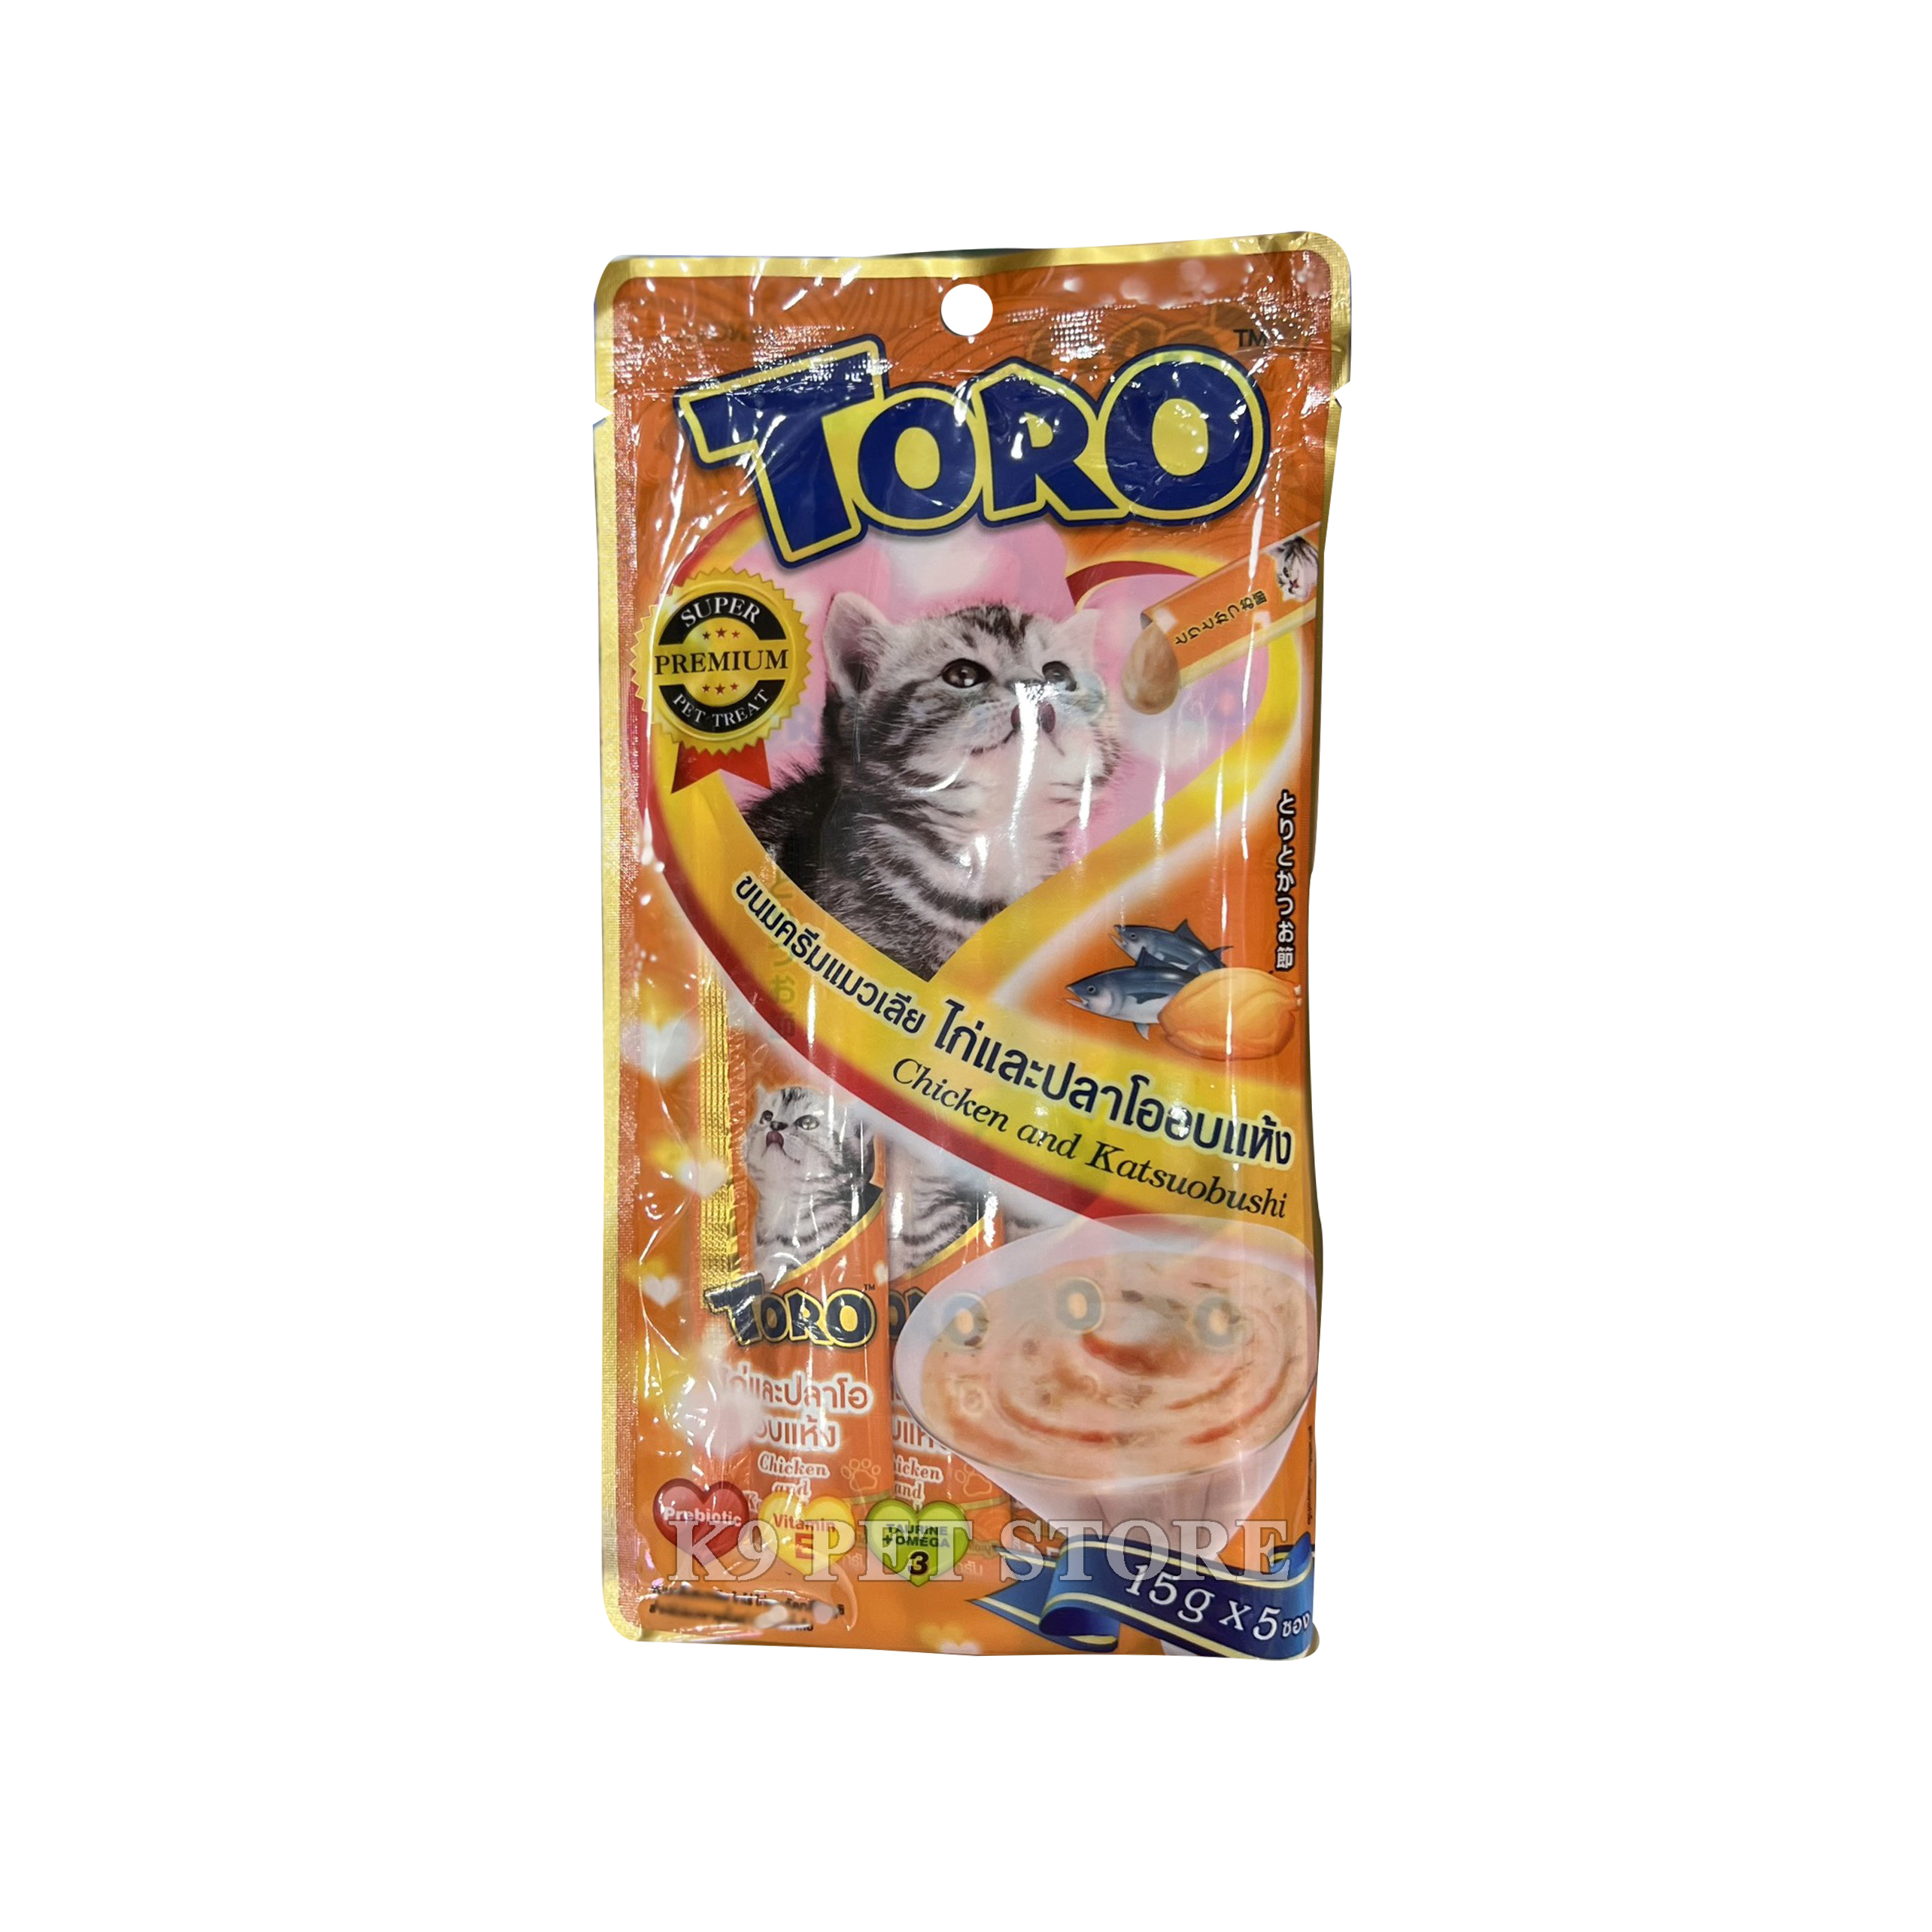 Súp thưởng cho mèo Toro Chicken and Katsuobushi 15gx5